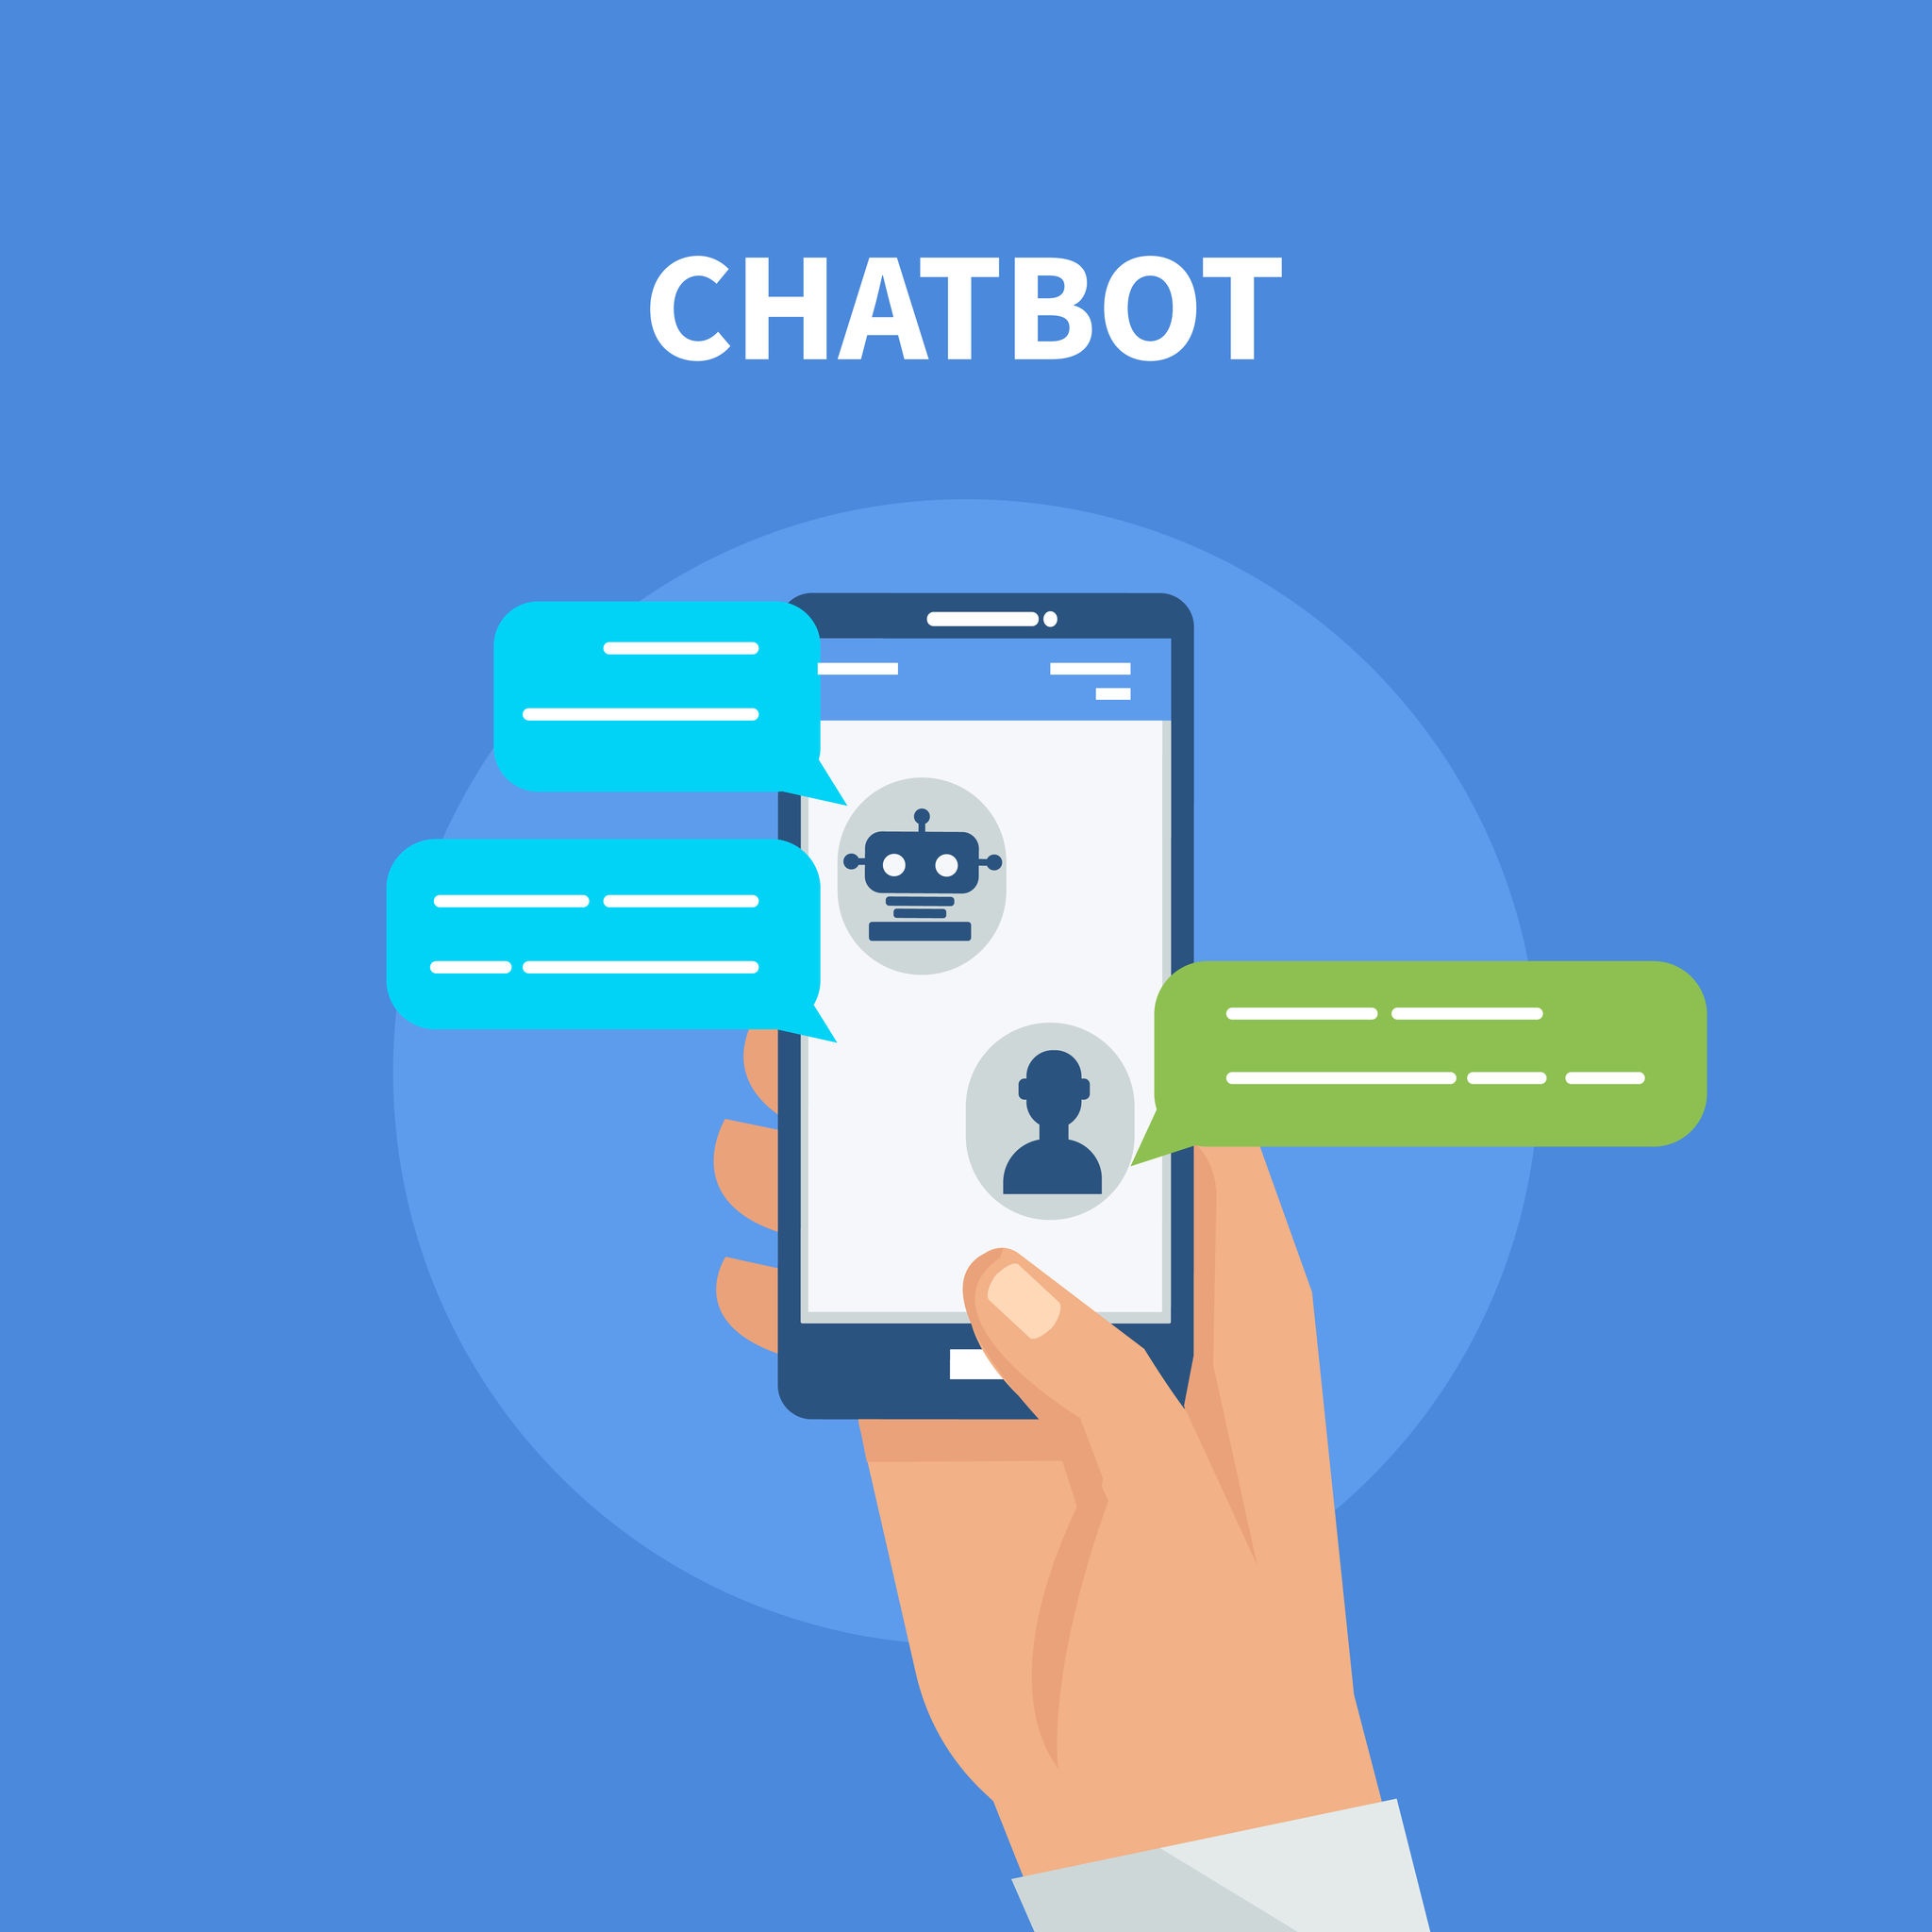 การใช้งานเทคโนโลยี Chatbot ที่มาช่วยในส่วนของการสื่อสารกับลูกค้าที่ดีมากๆ